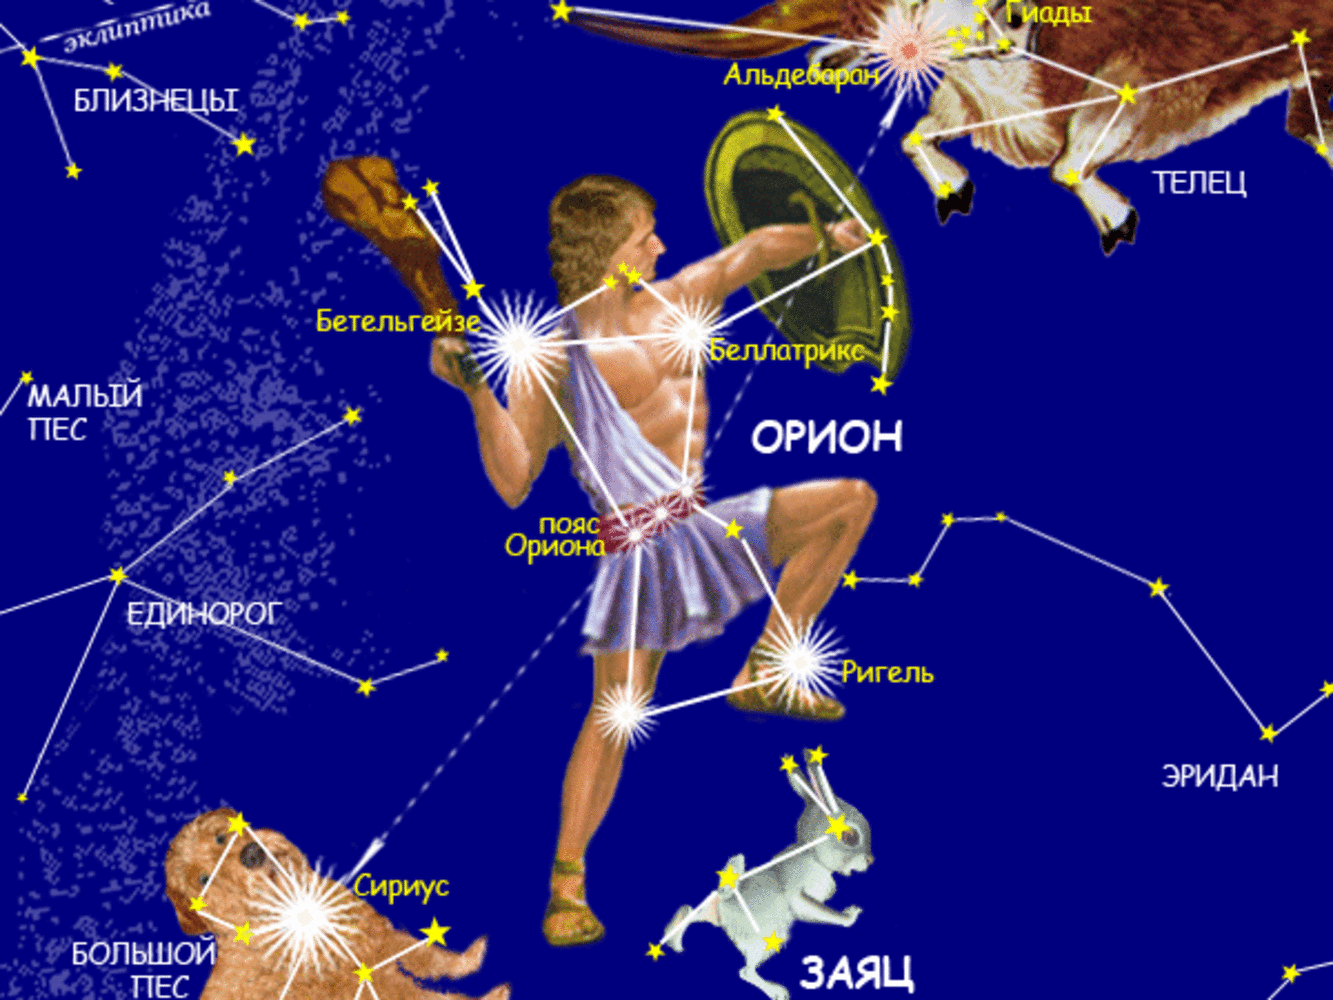 Созвездие сюжет. Созвездие Орион название звезд. Орион Созвездие схема самая яркая звезда. Орион Созвездие схема со звездами. Созвездие Ориона на небе с названиями звезд.